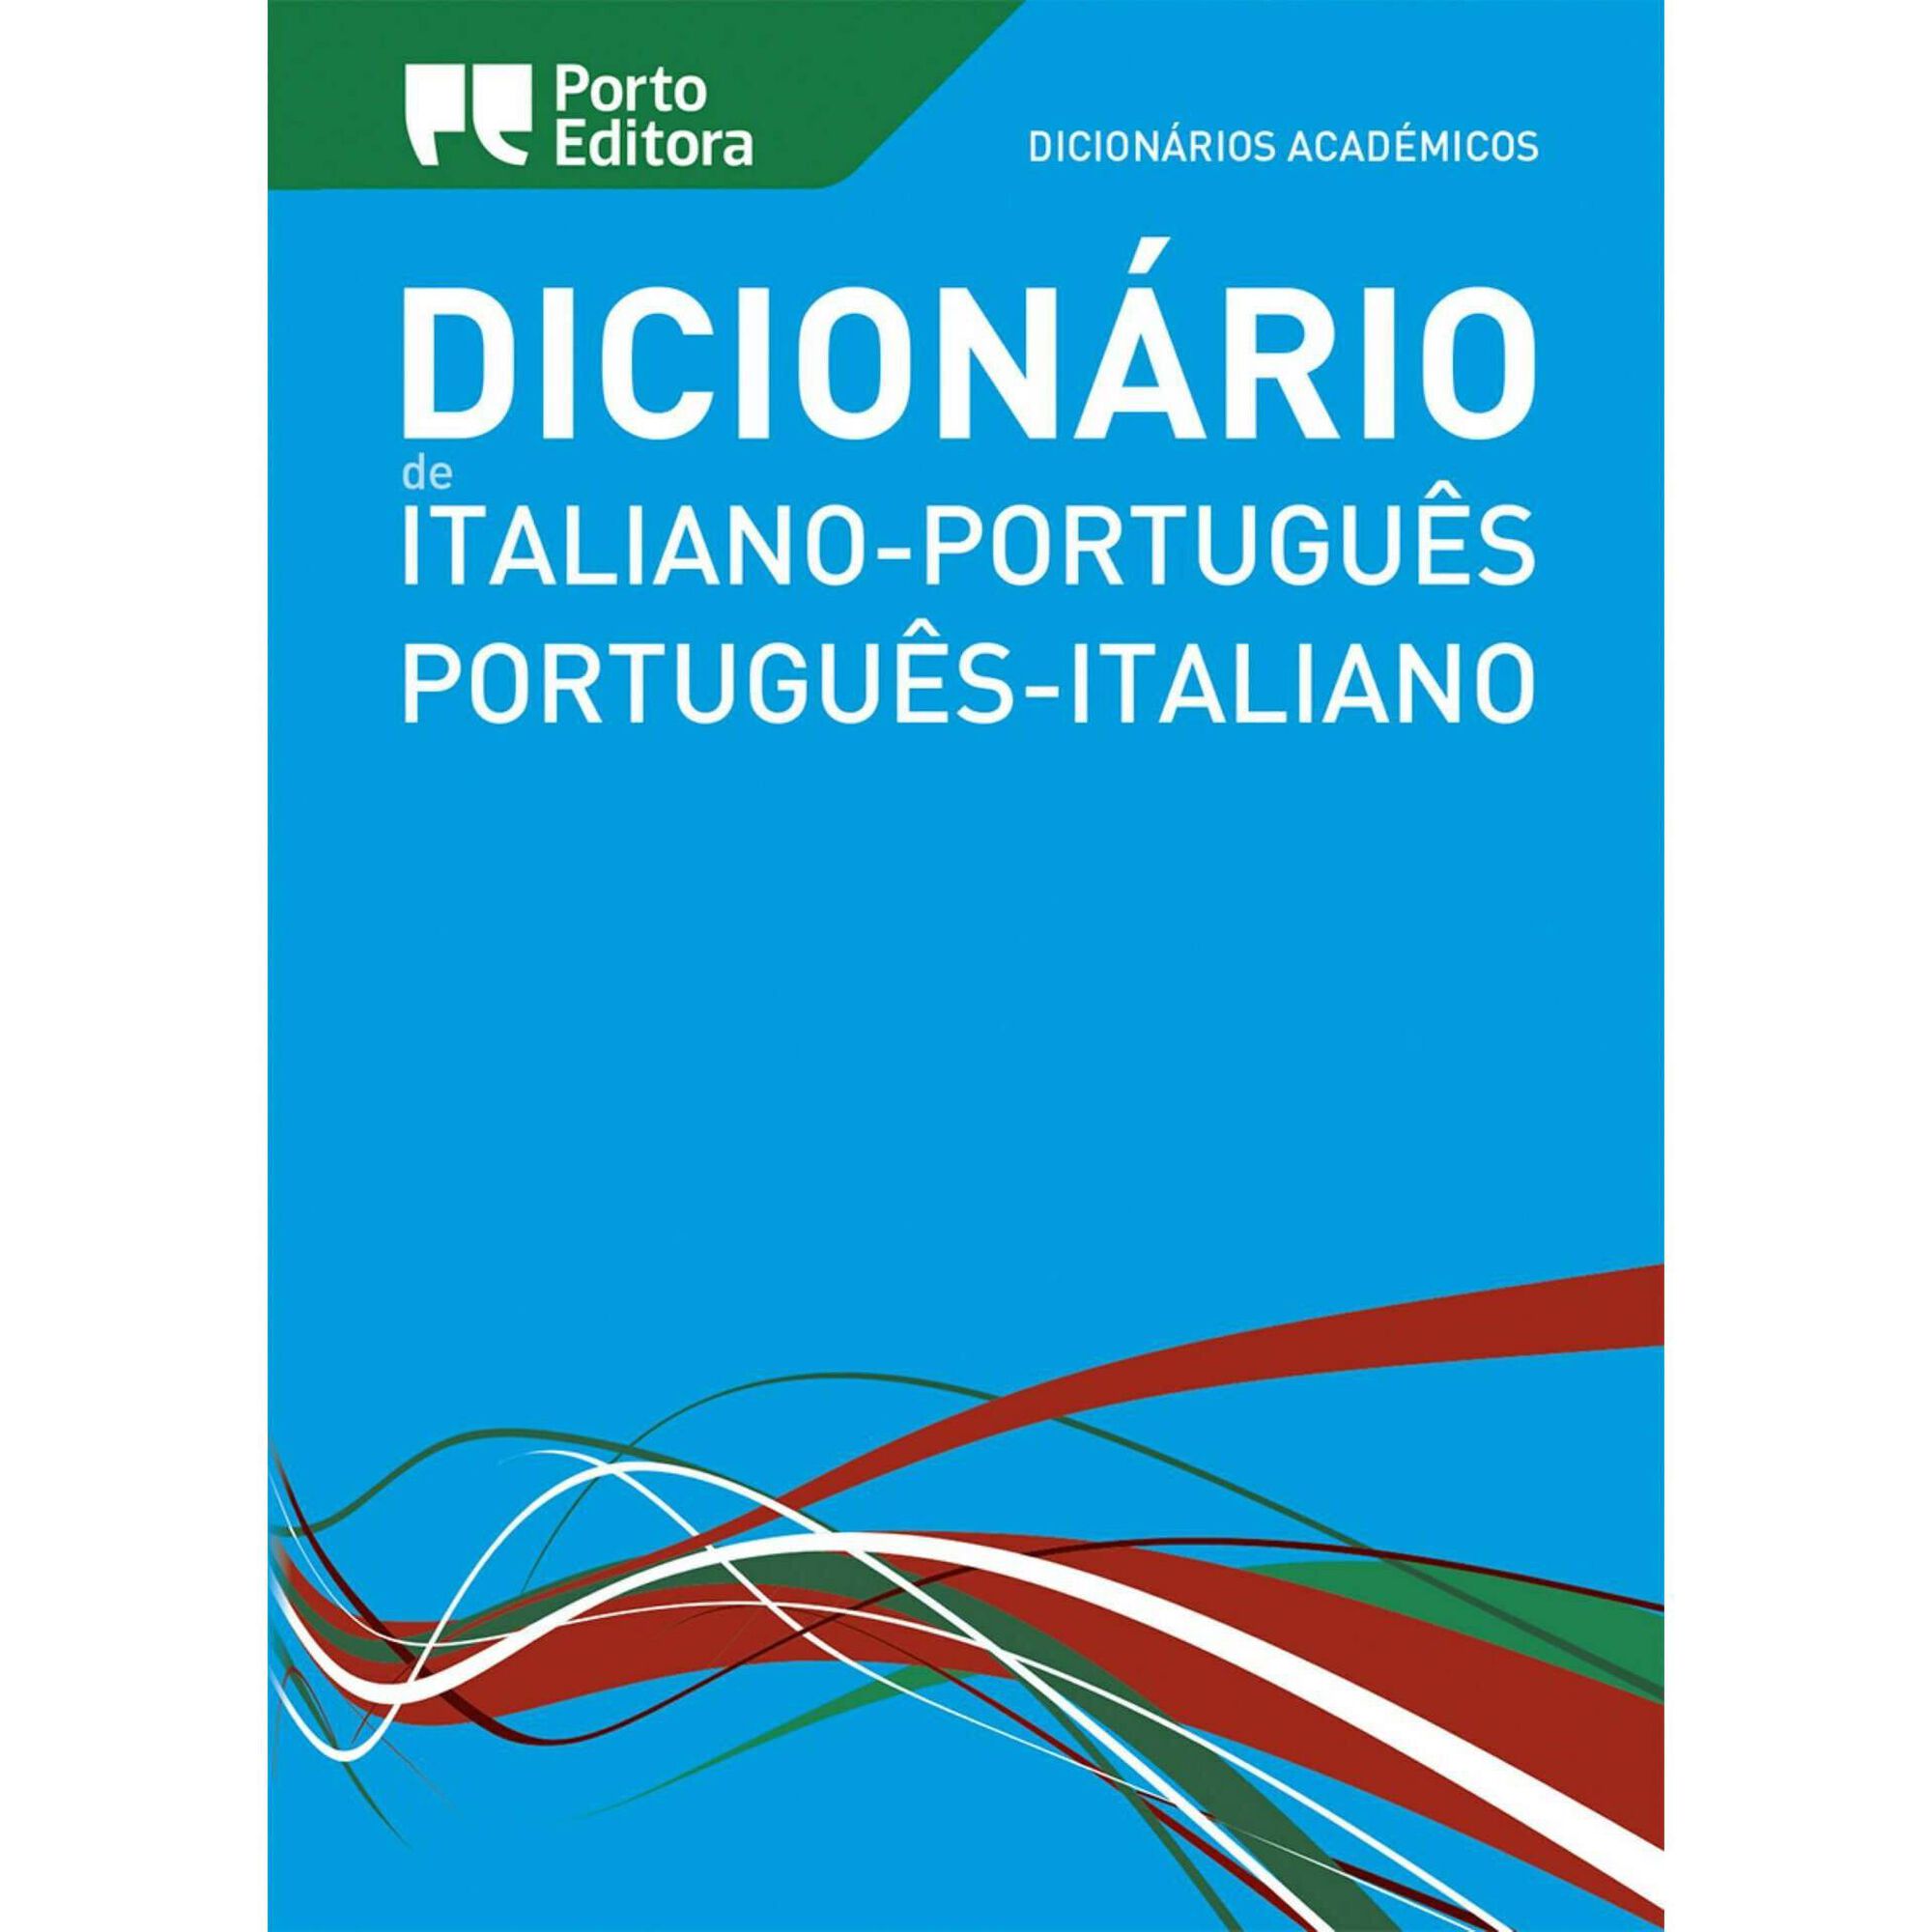 Protandria - Dicio, Dicionário Online de Português